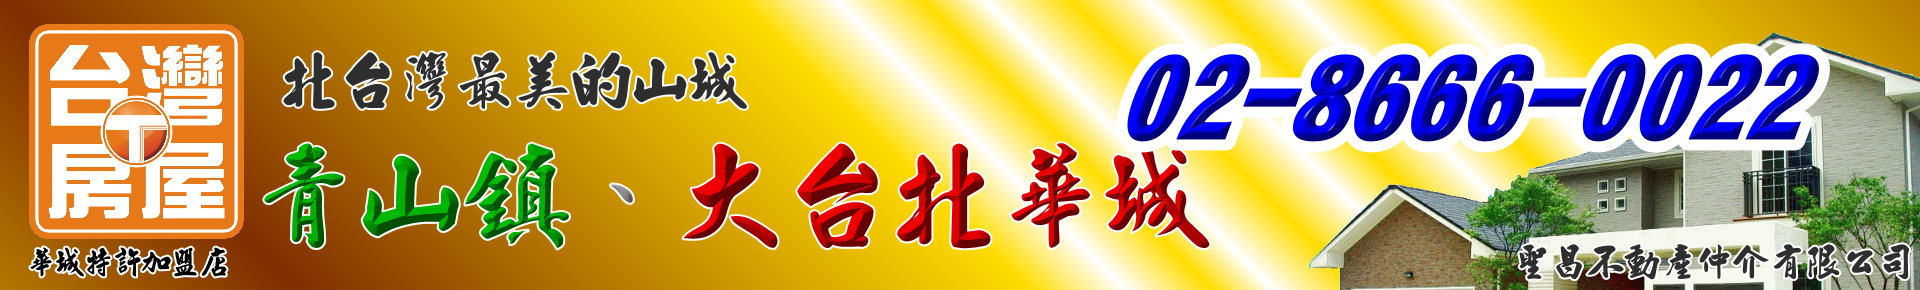 房屋搜尋結果-青山鎮、大台北華城【台灣房屋/銷售團隊】北台灣最美的山城！ logo